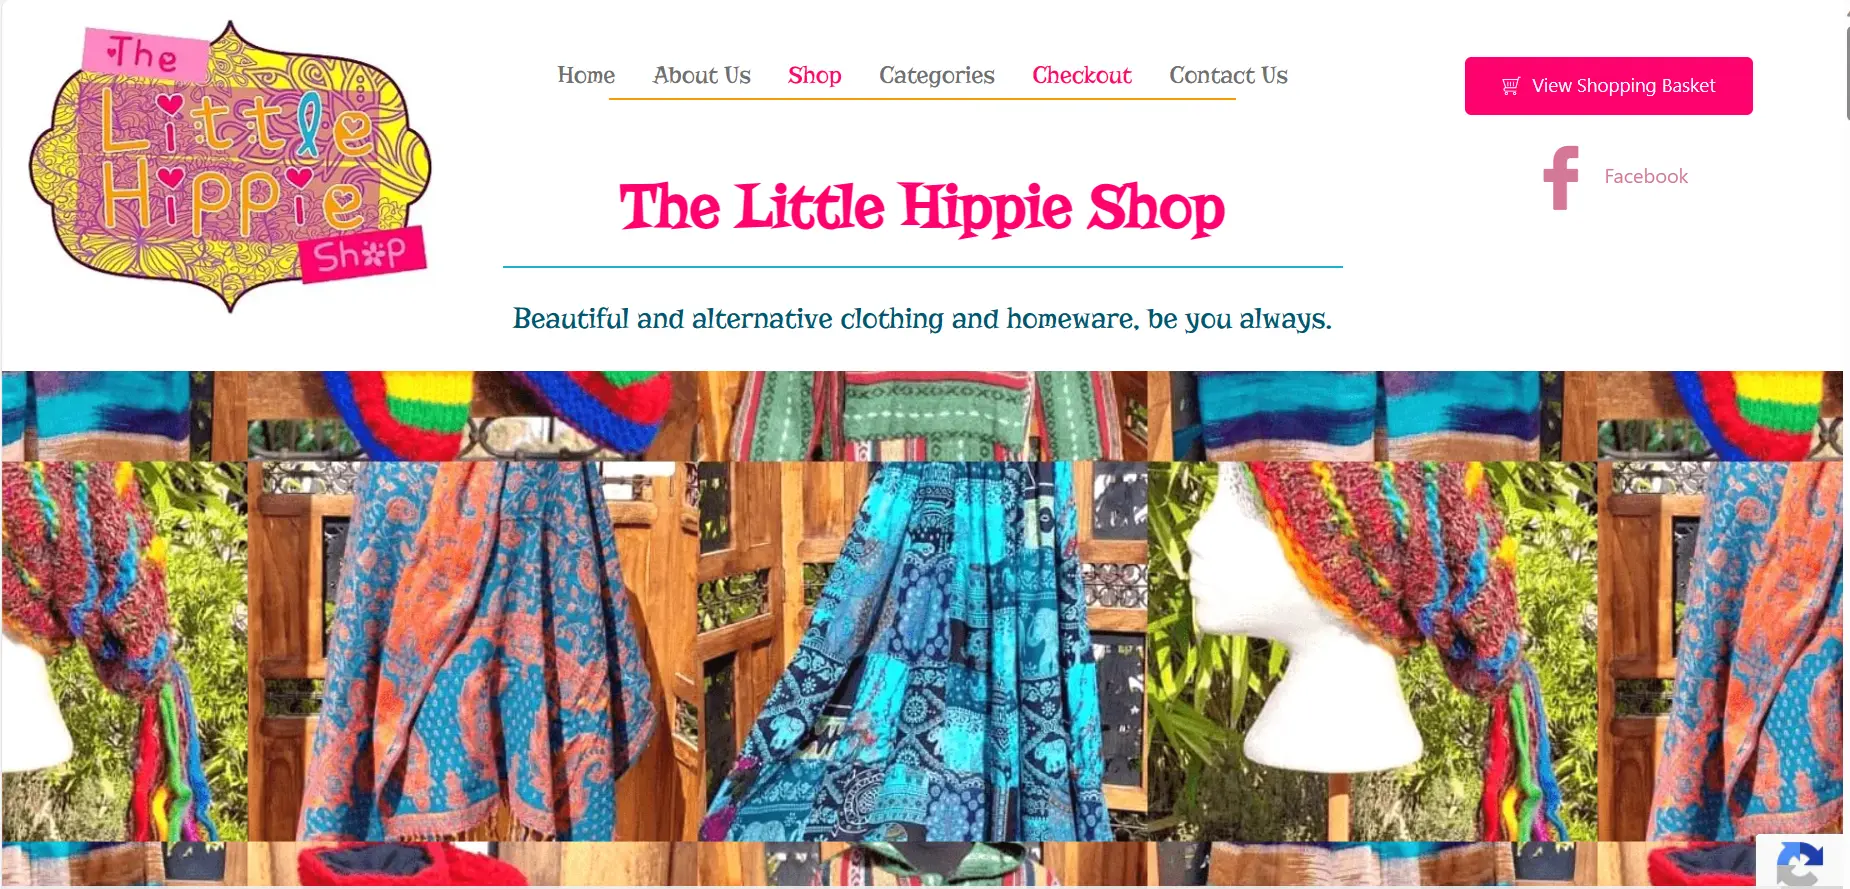 The Little Hippie Shop Website Portfolio Showcase